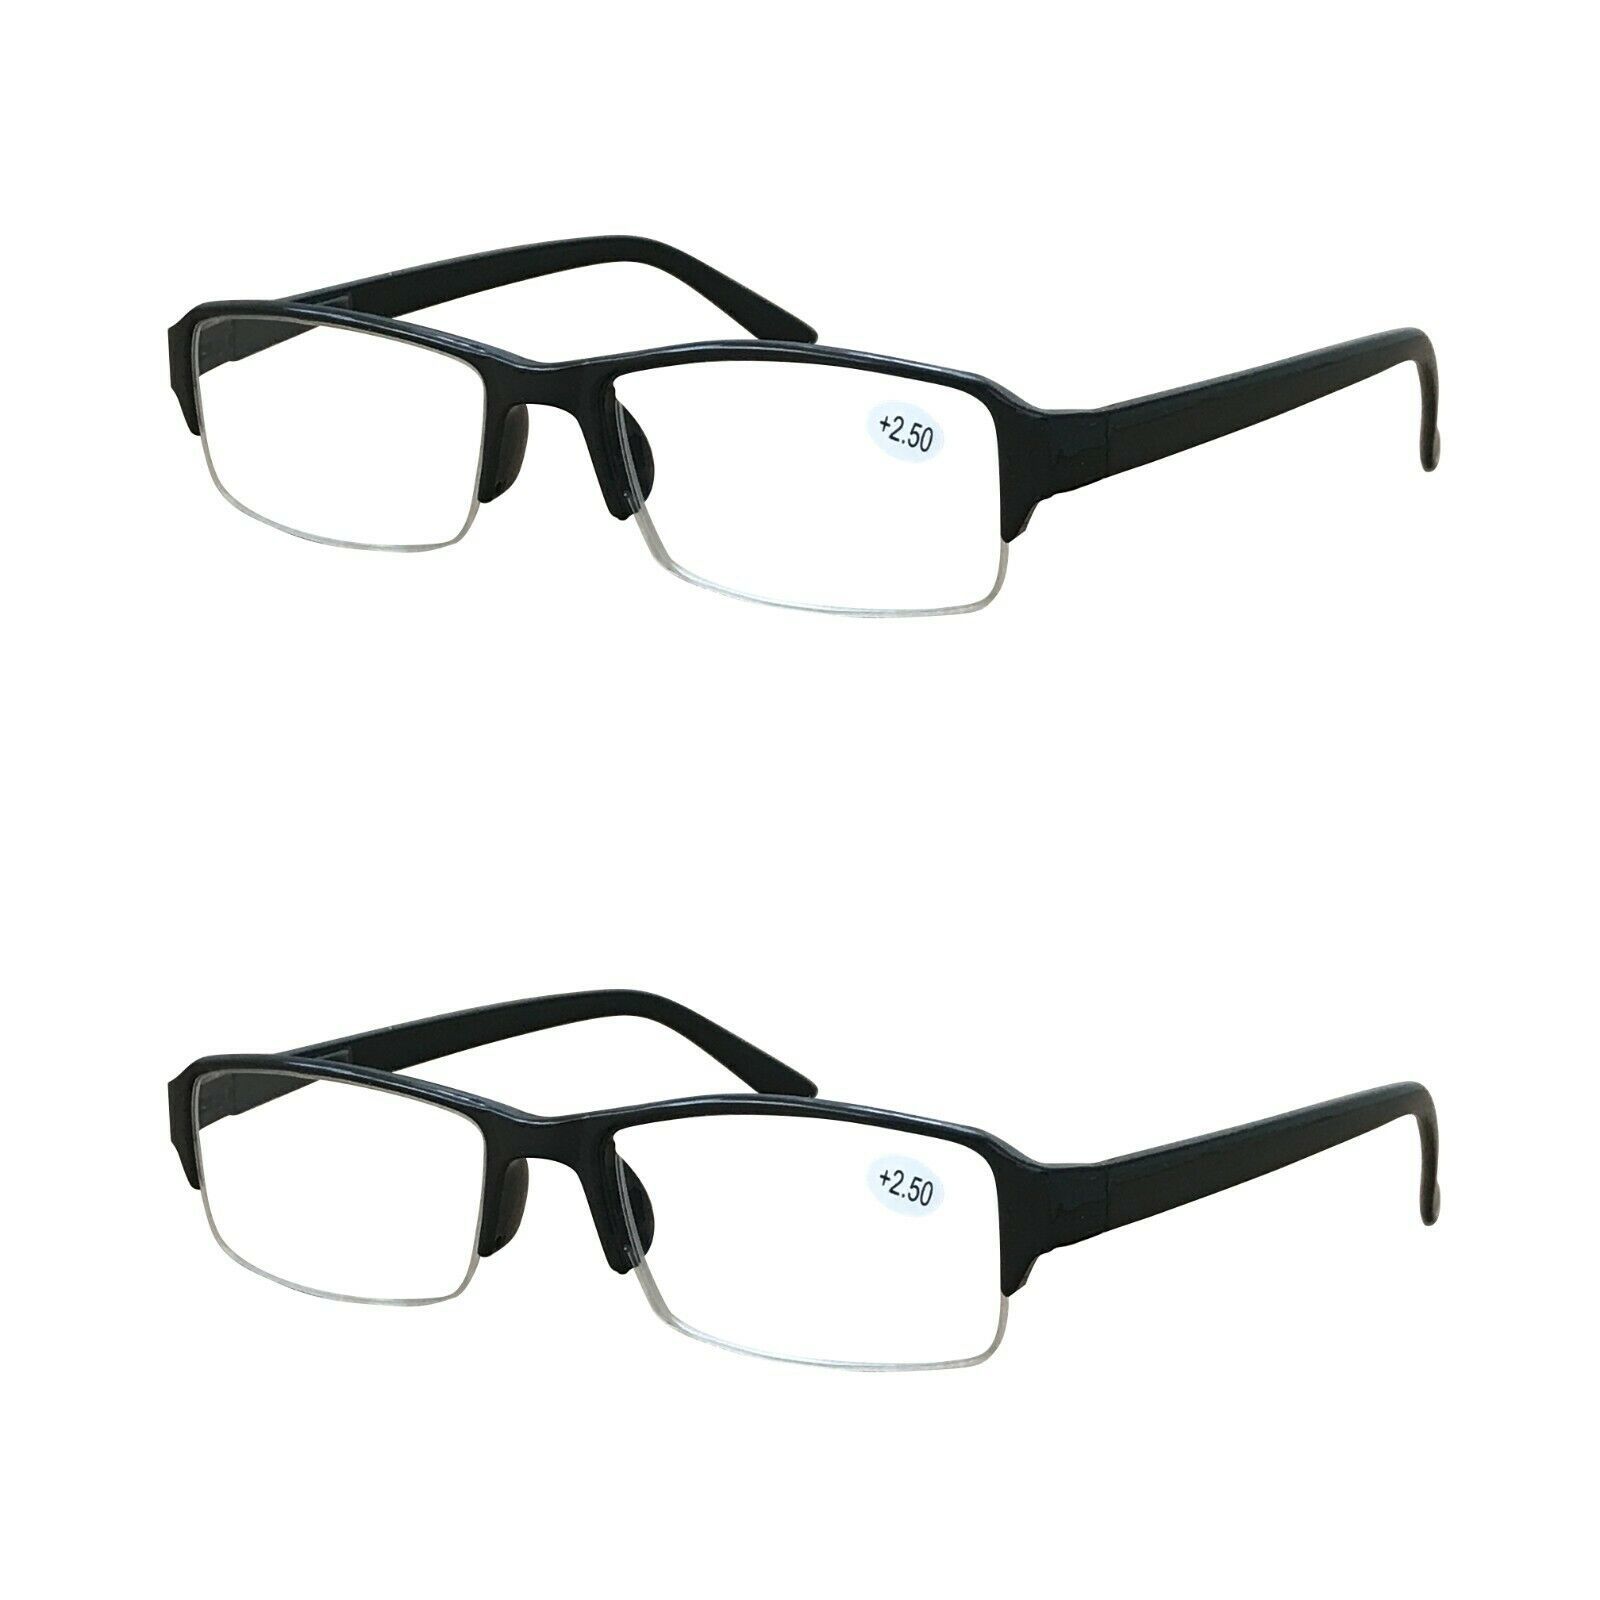 2 Packs Mens Unisex Rectangular Half Frame Reading Glasses Spring Hinge Readers Reading Glasses